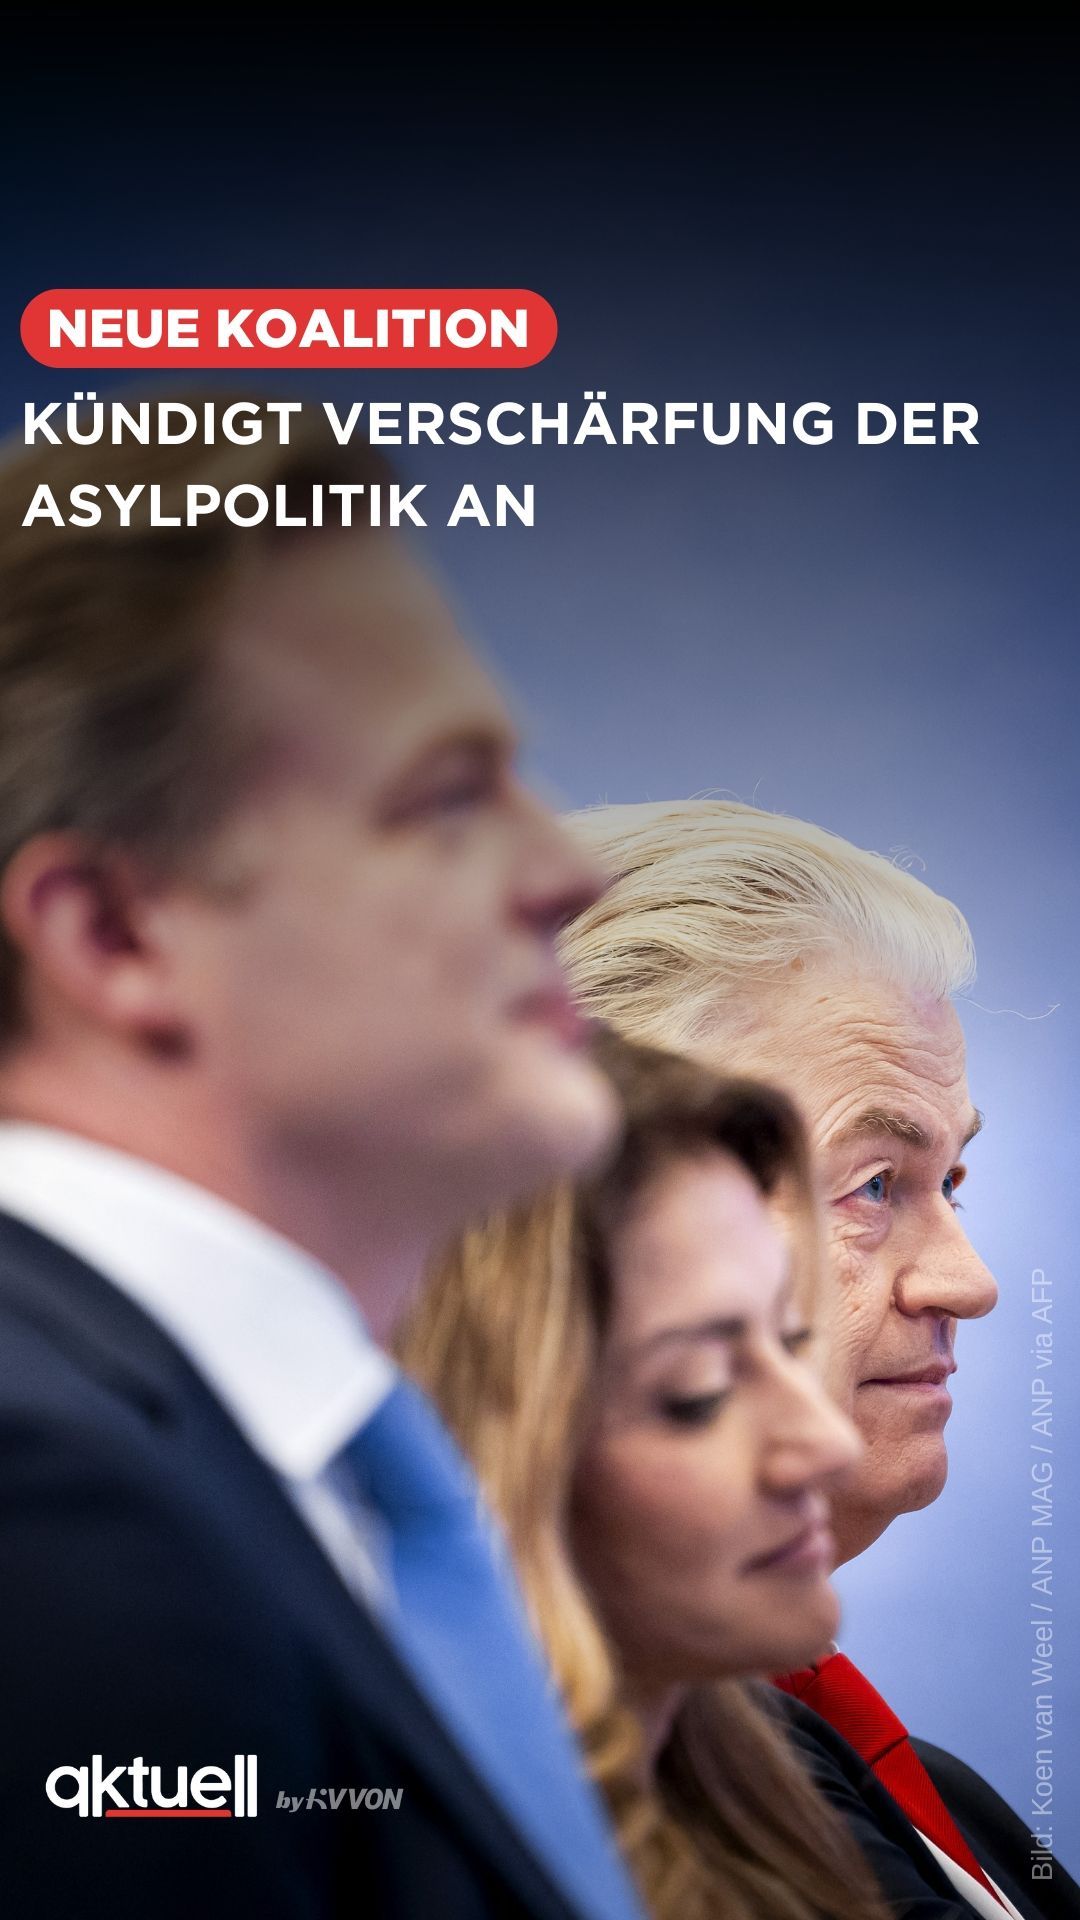 Niederländische Parteien einigen sich auf Regierungsbildung